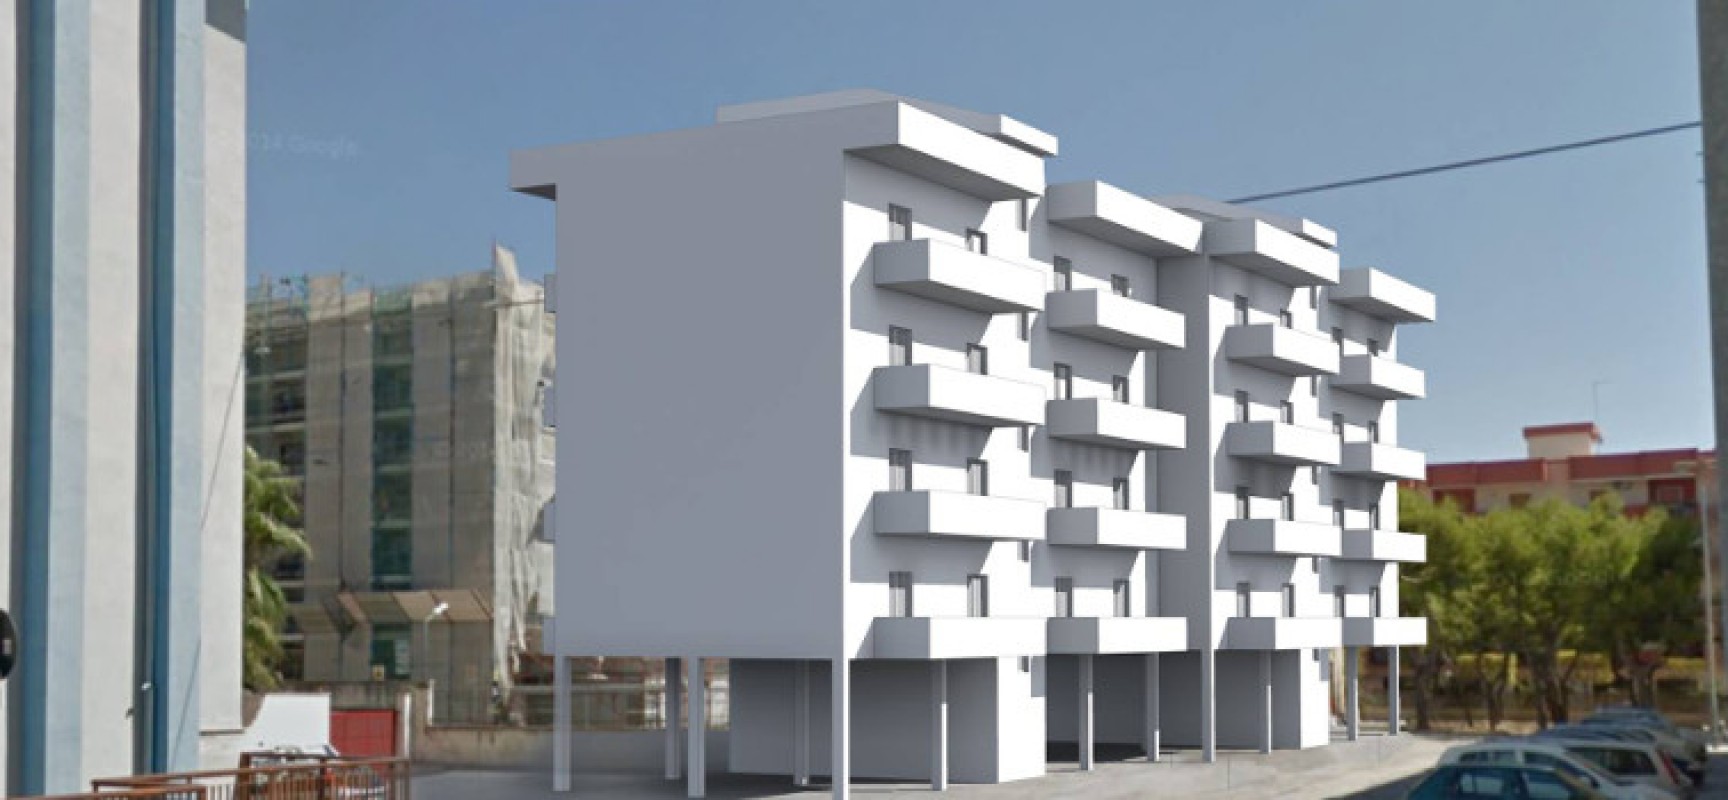 Il Sindaco annuncia via Facebook un nuovo cantiere di edilizia popolare a Bisceglie